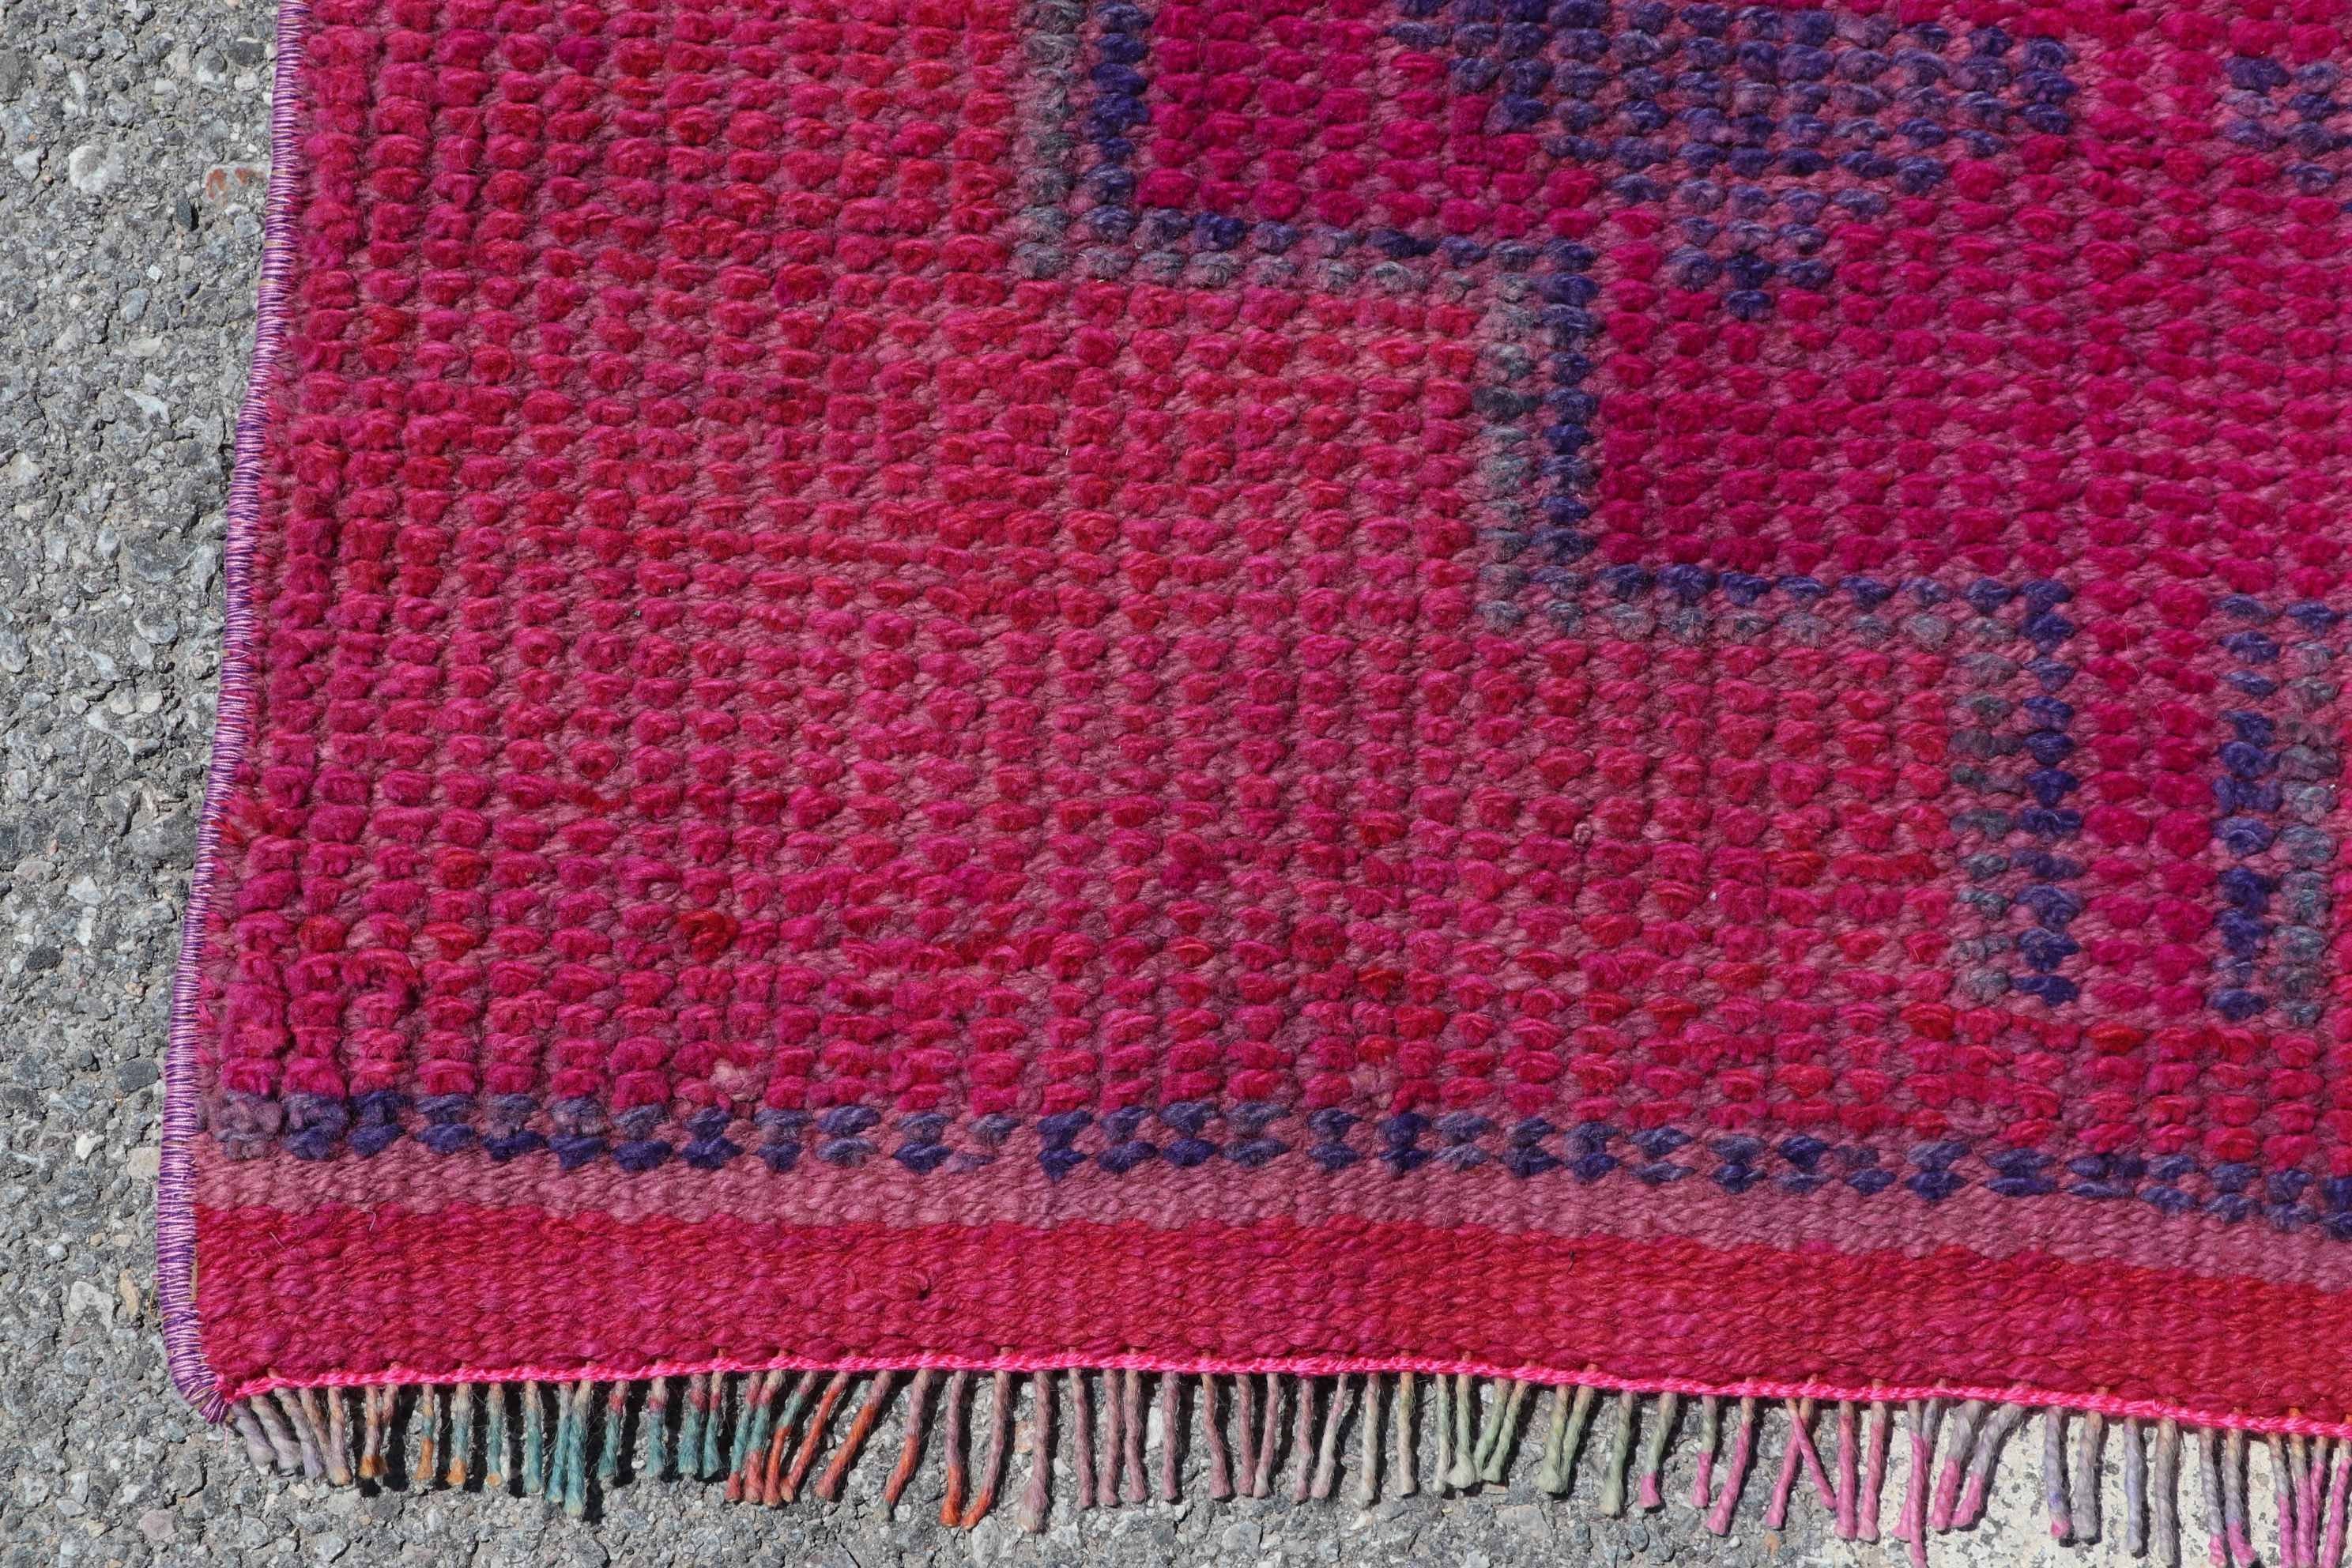 Moroccan Rug, Pink  2.6x8.9 ft Runner Rug, Bedroom Rug, Vintage Rug, Stair Rugs, Rugs for Kitchen, Turkish Rug, Hallway Rug